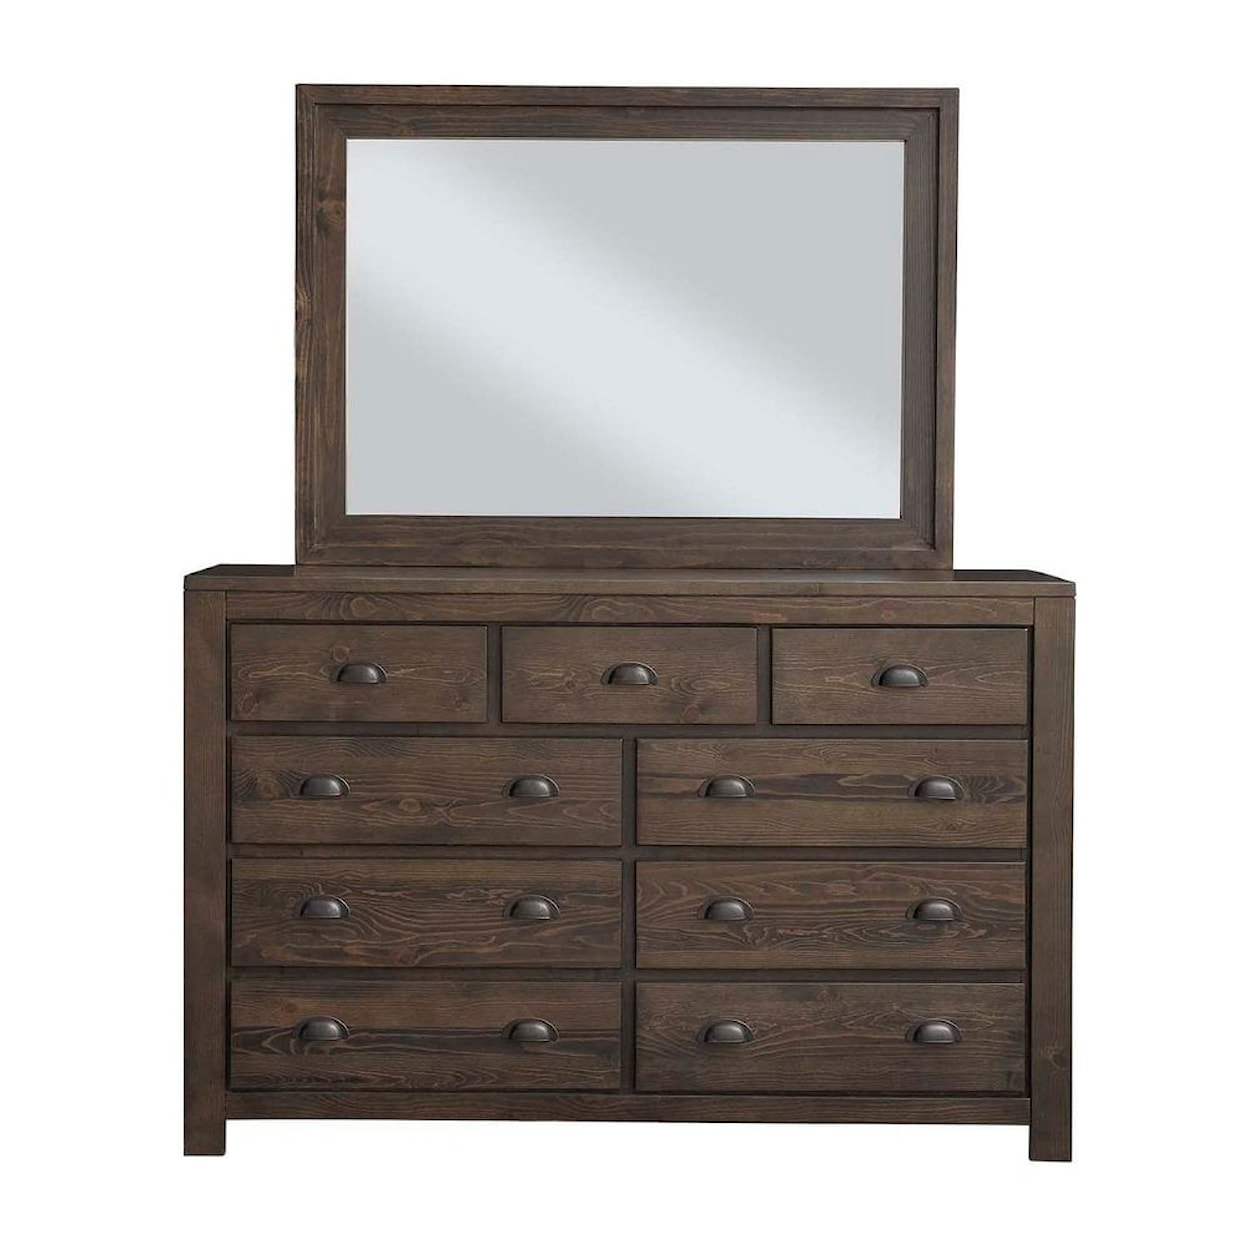 Progressive Furniture Falcon Bluff Dresser and Mirror